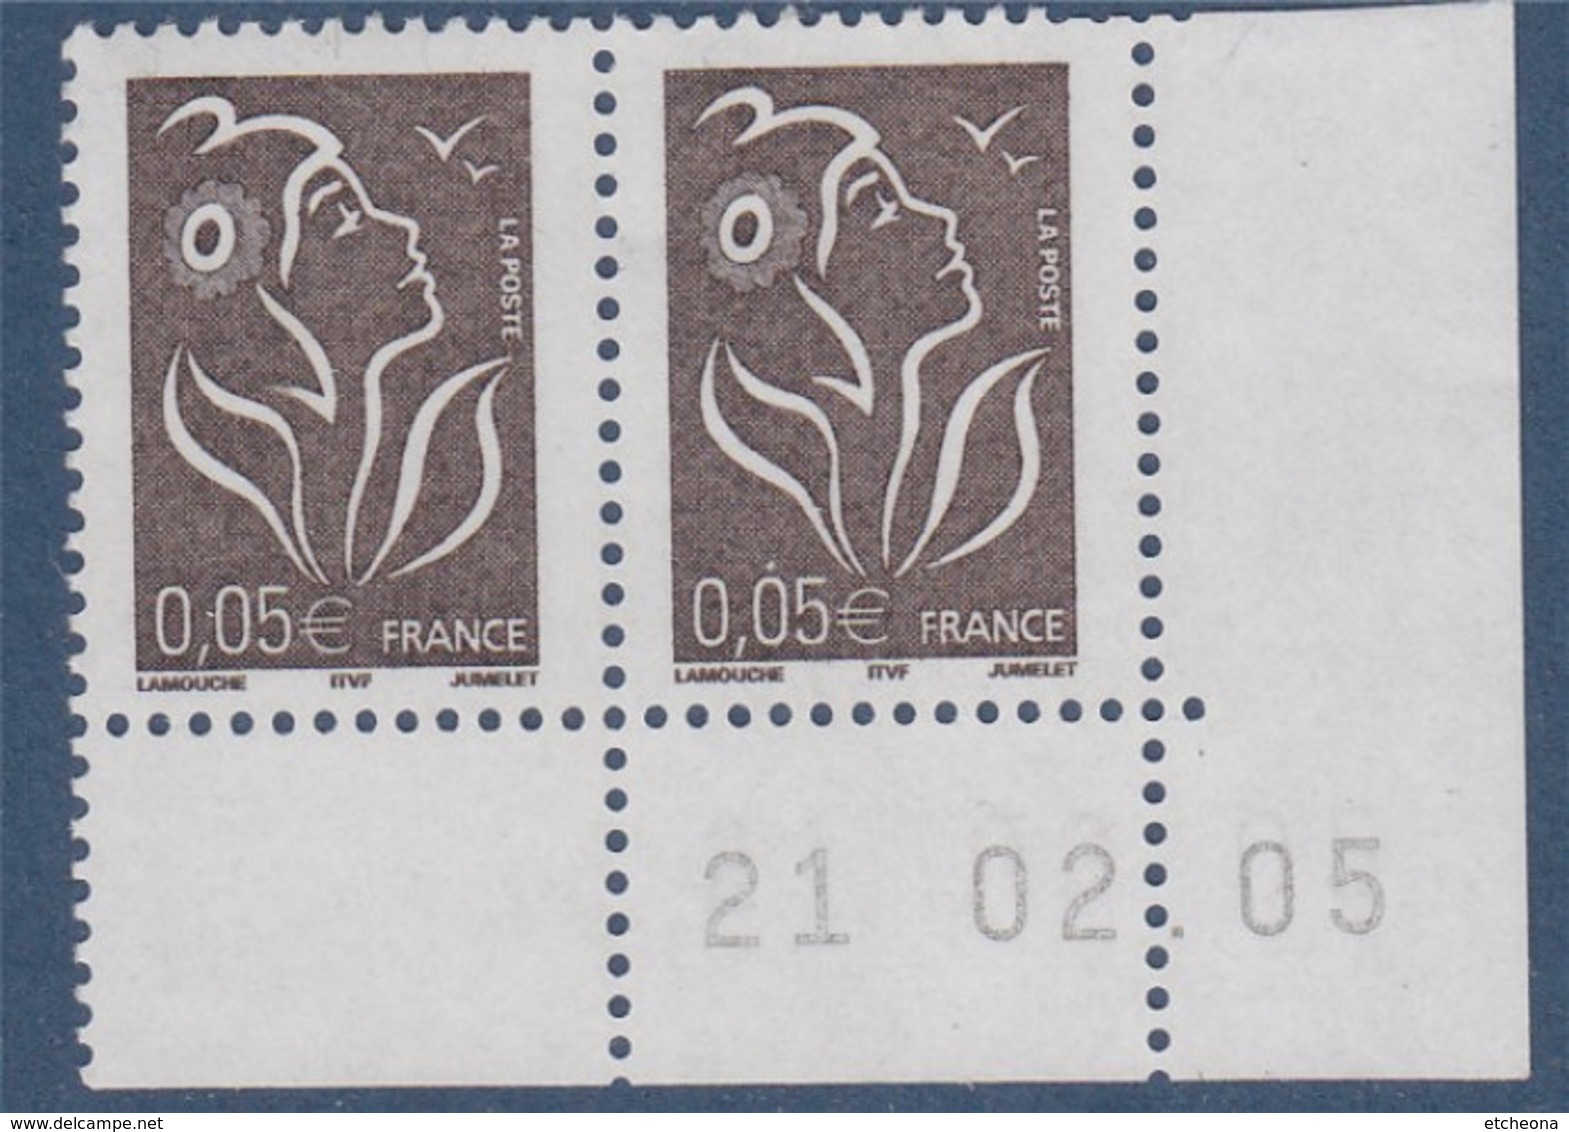 Lamouche 0.05€ Paire N°3754 Neuf En Coin De Feuille Daté 21.2.05 ITVF - 2004-2008 Marianne (Lamouche)